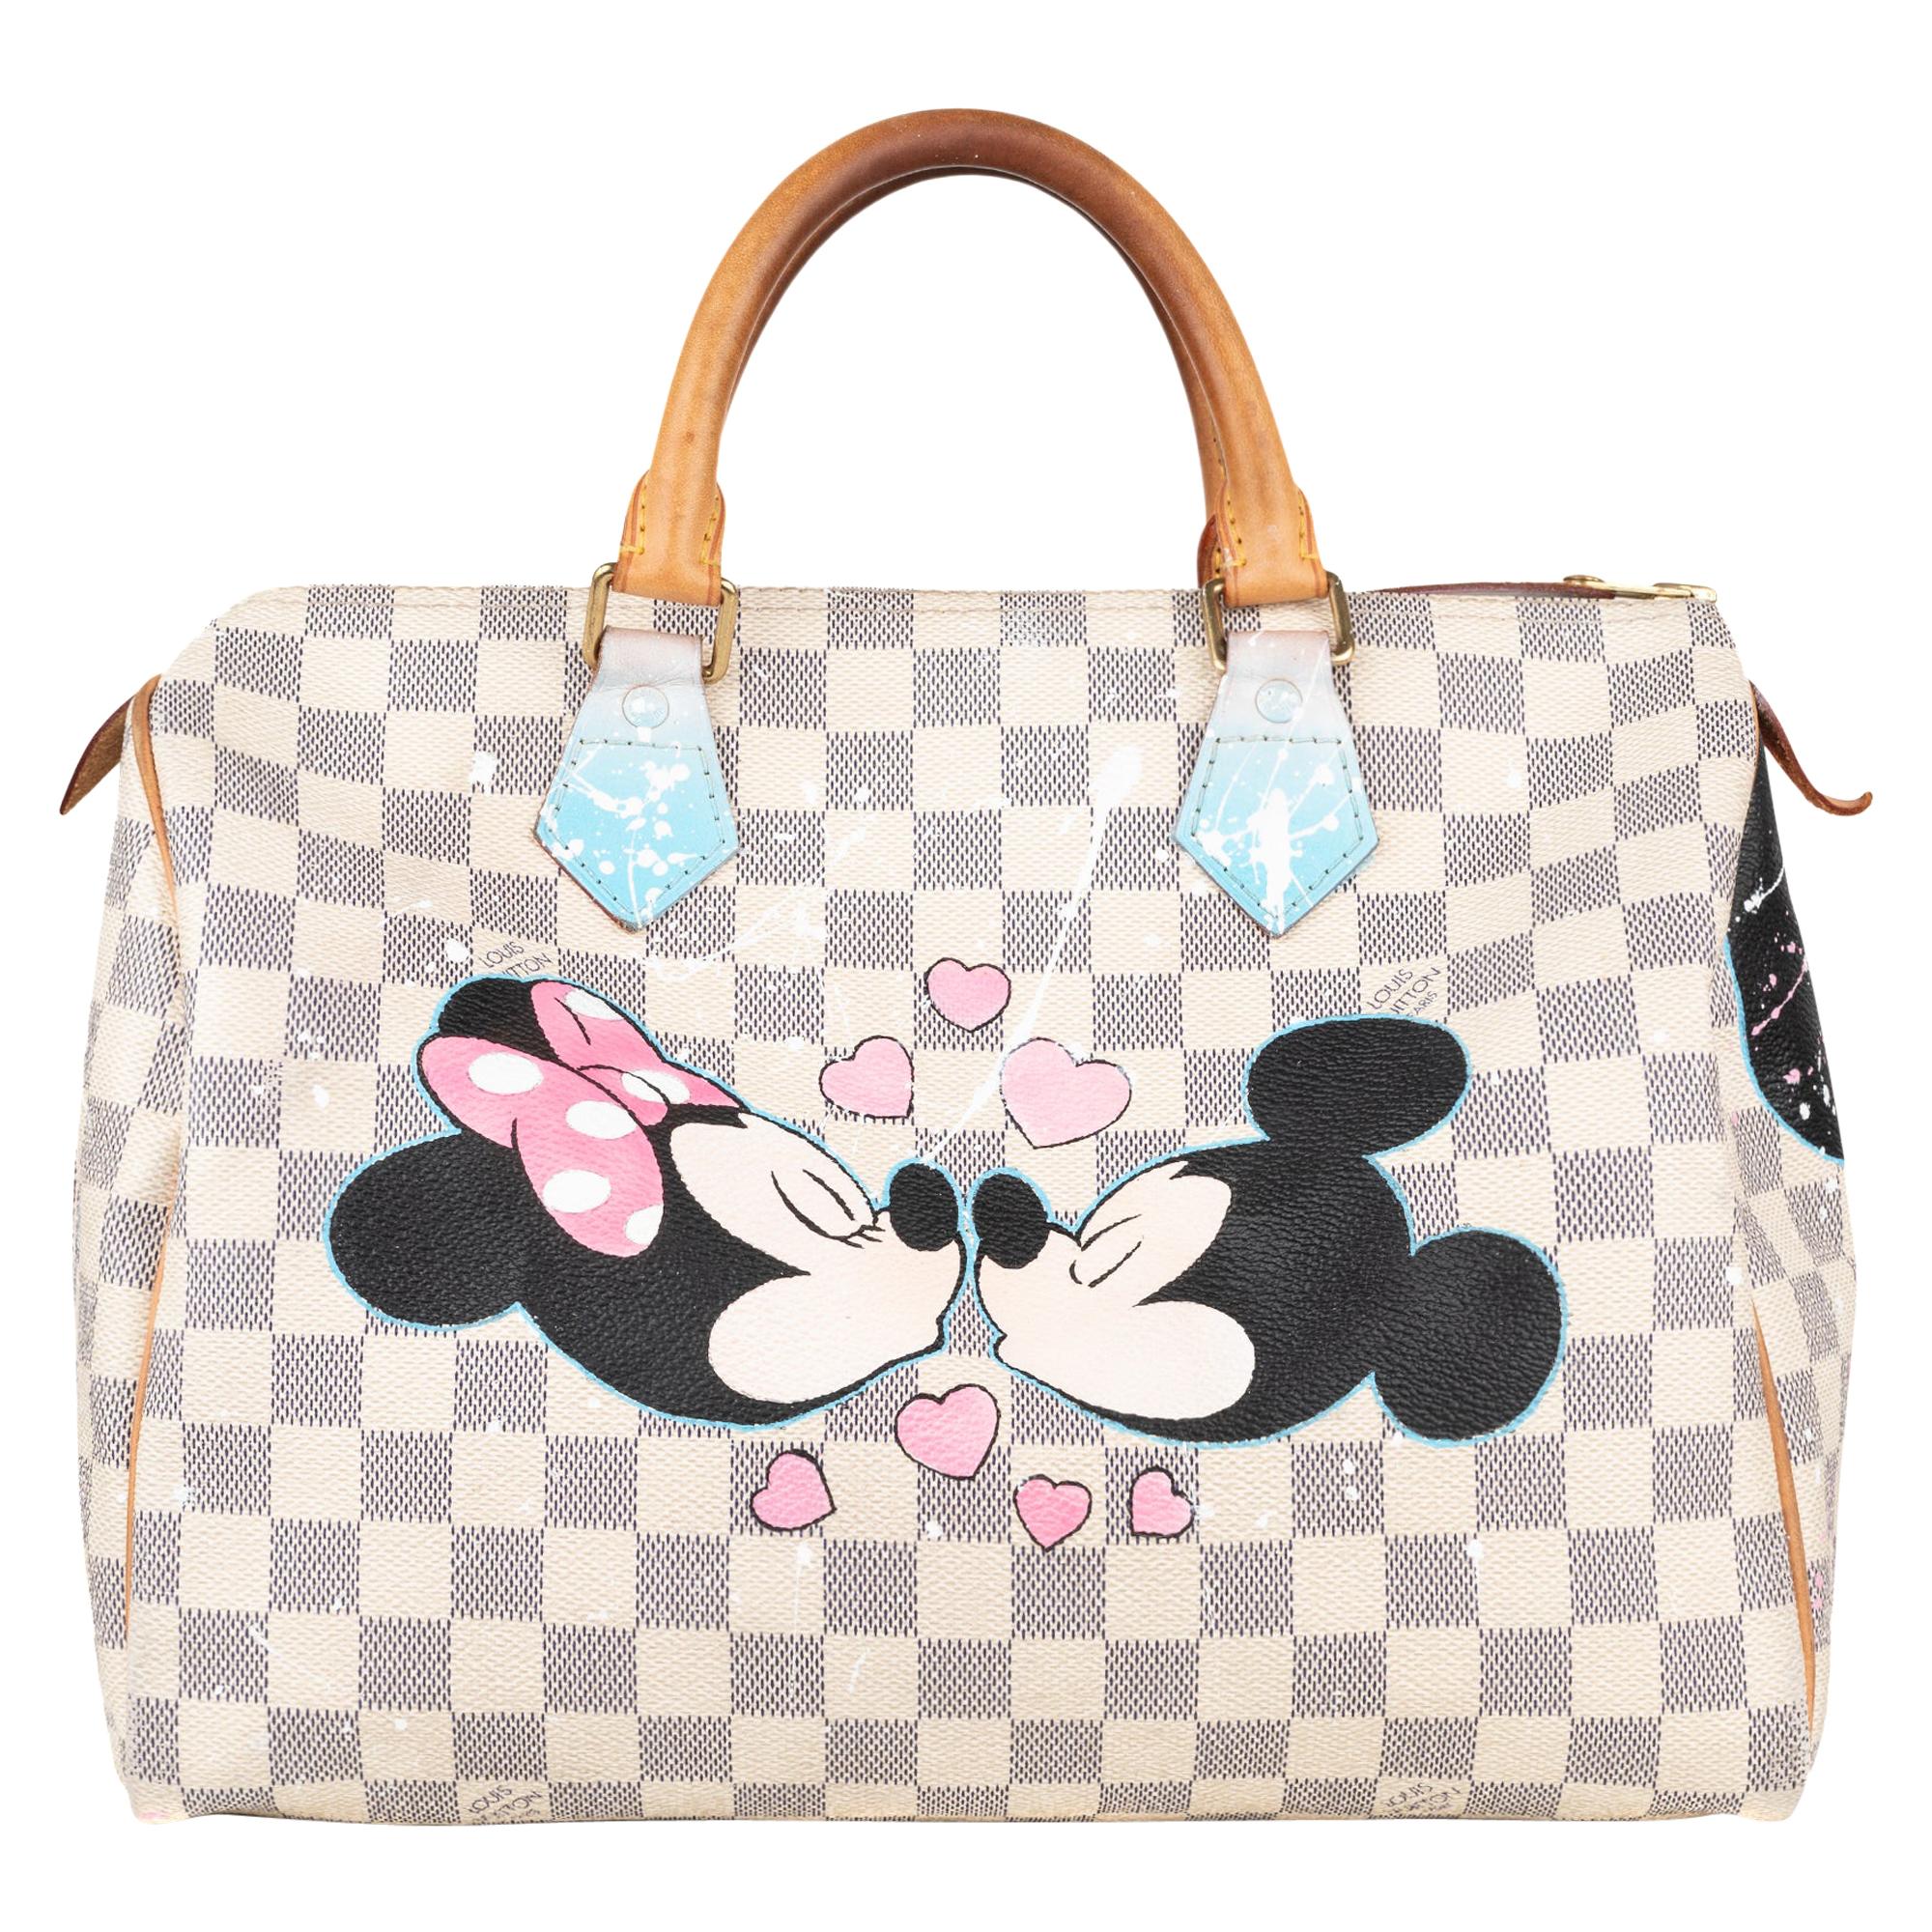 Handbag Louis Vuitton Speedy 30 customized "Minnie&Mickey" by PatBo !